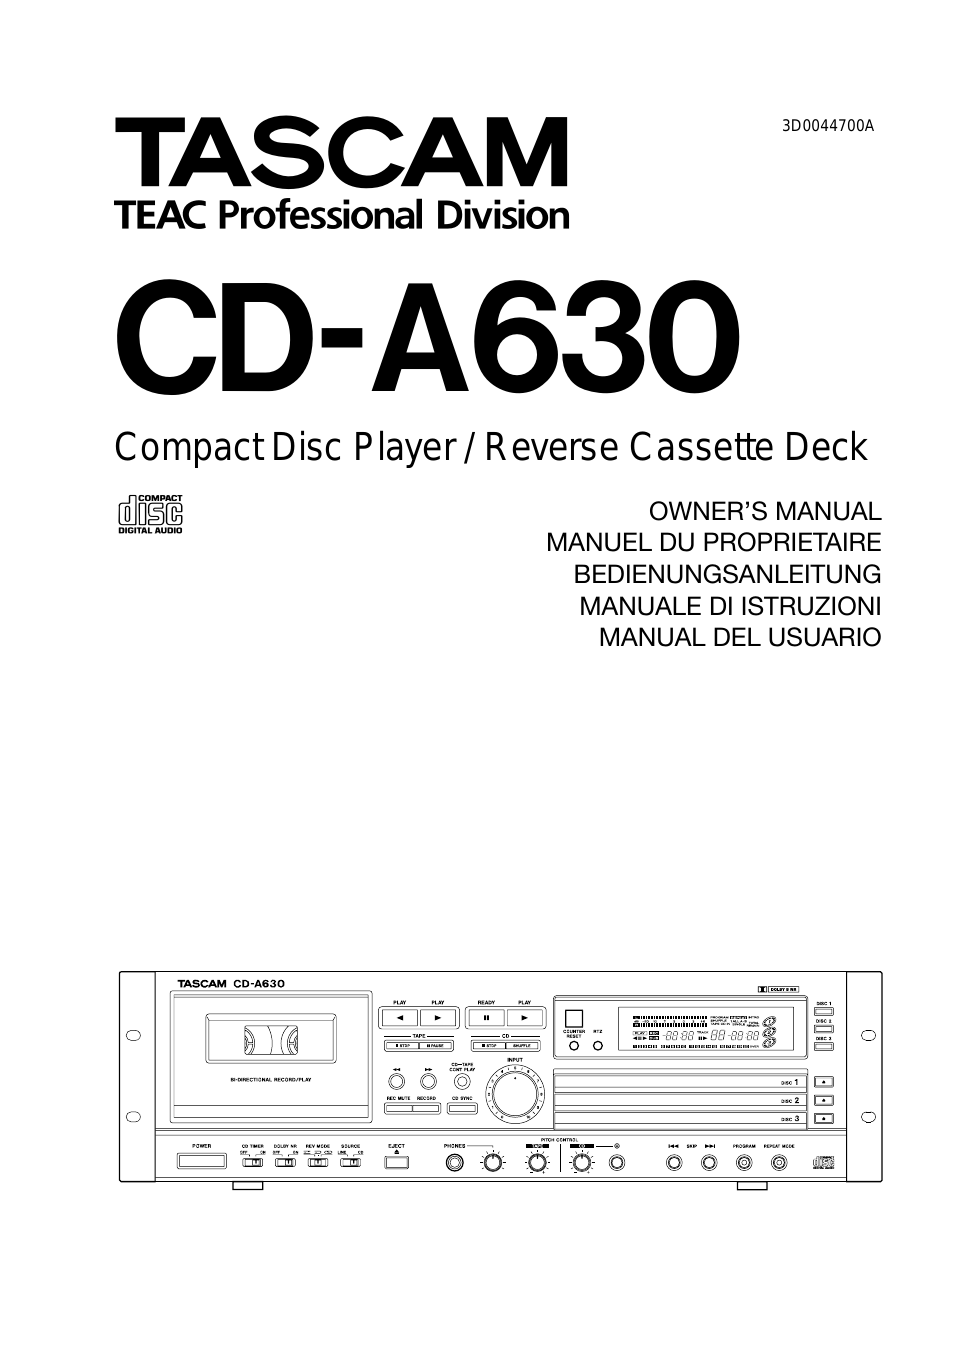 CD-A630